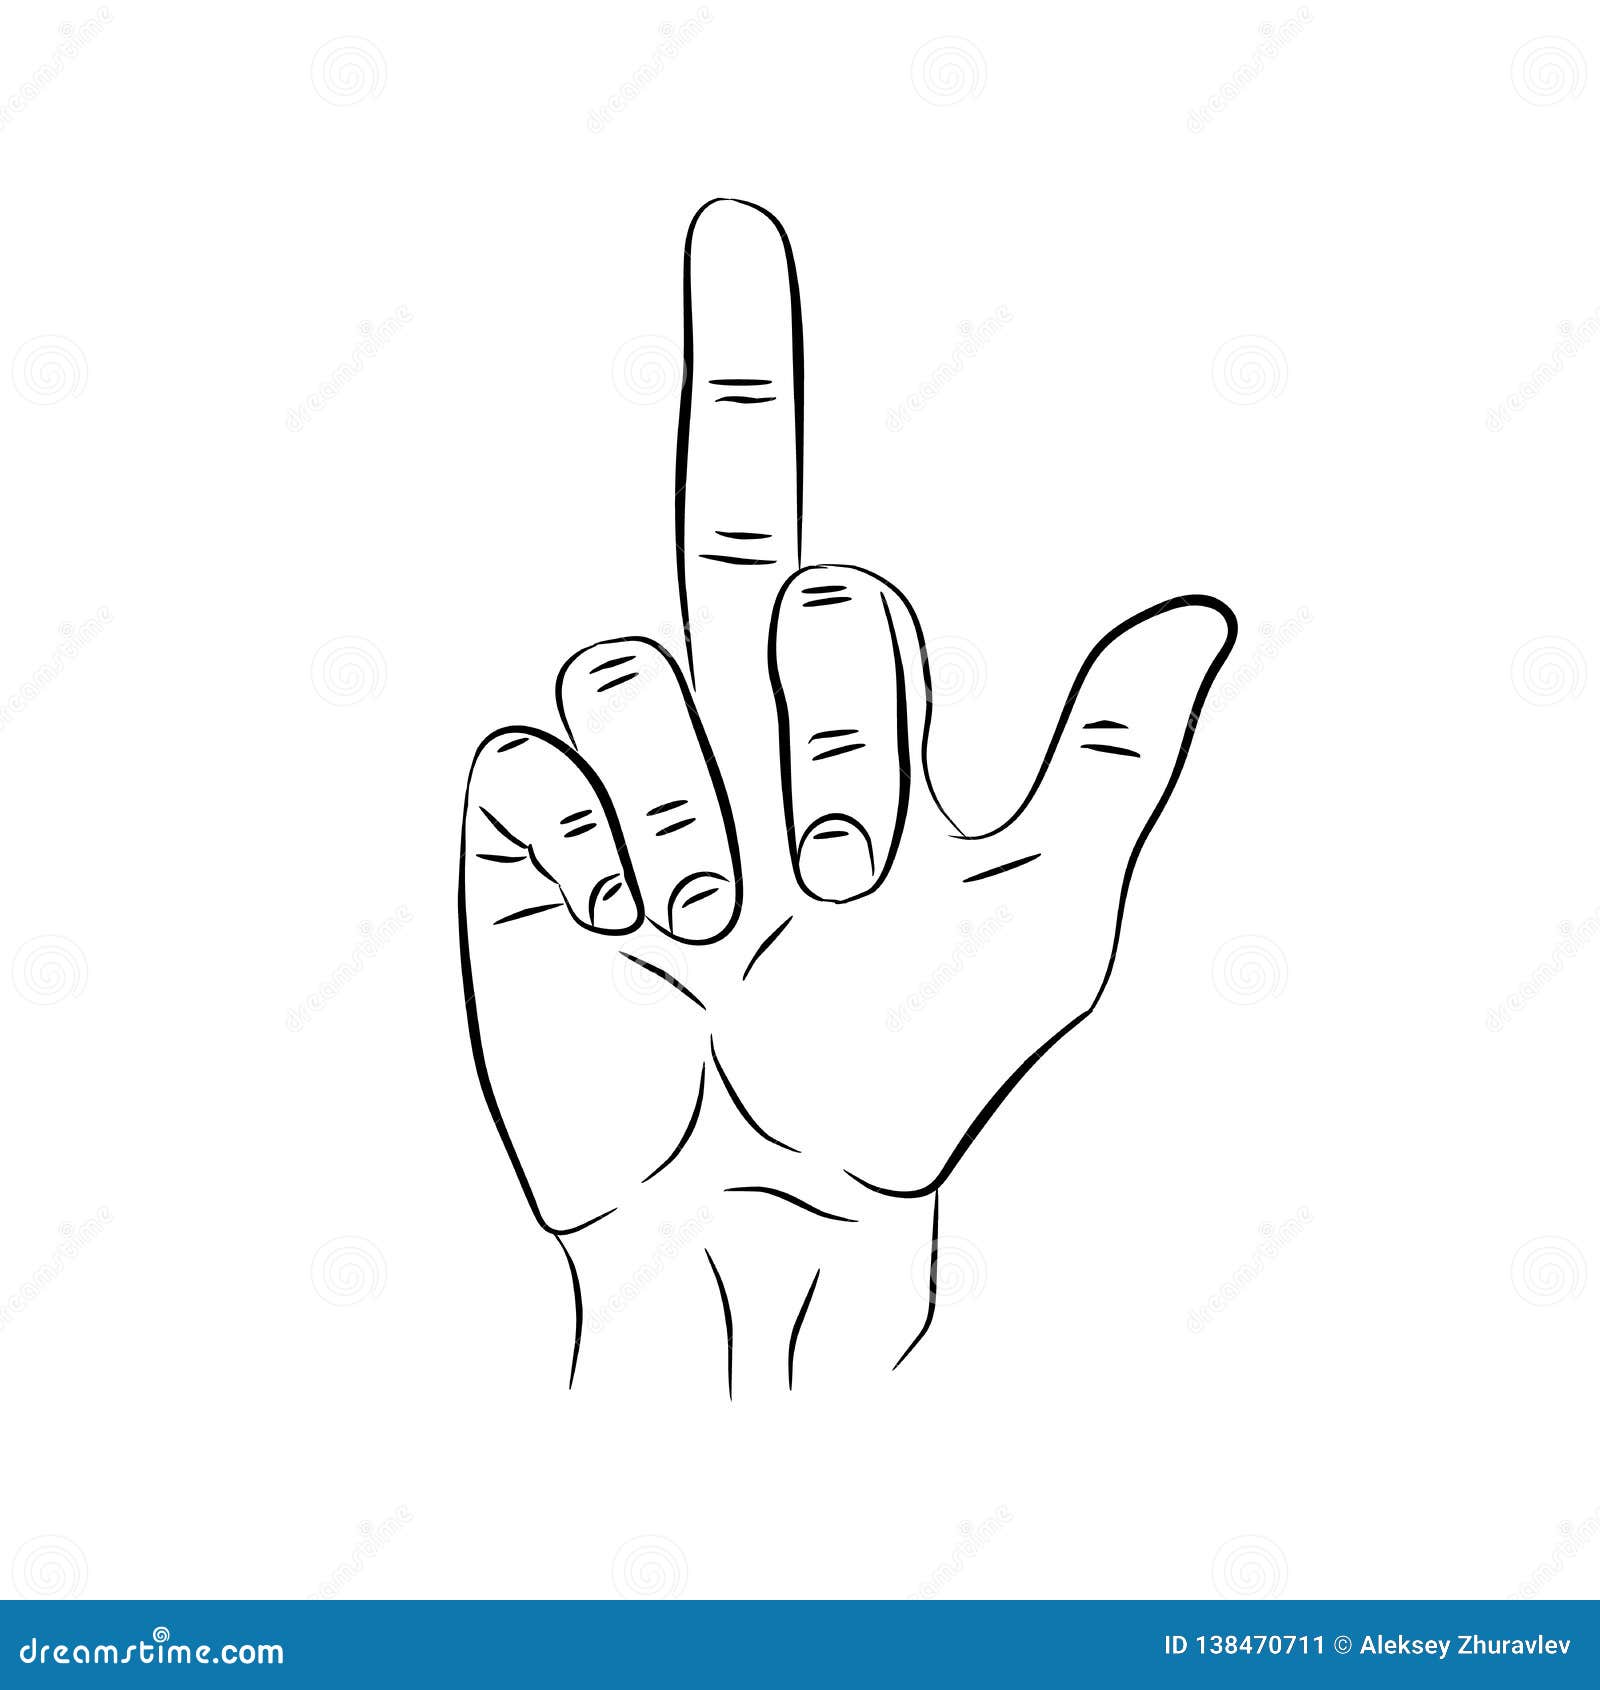 Middle finger Vectors  Illustrations for Free Download  Freepik